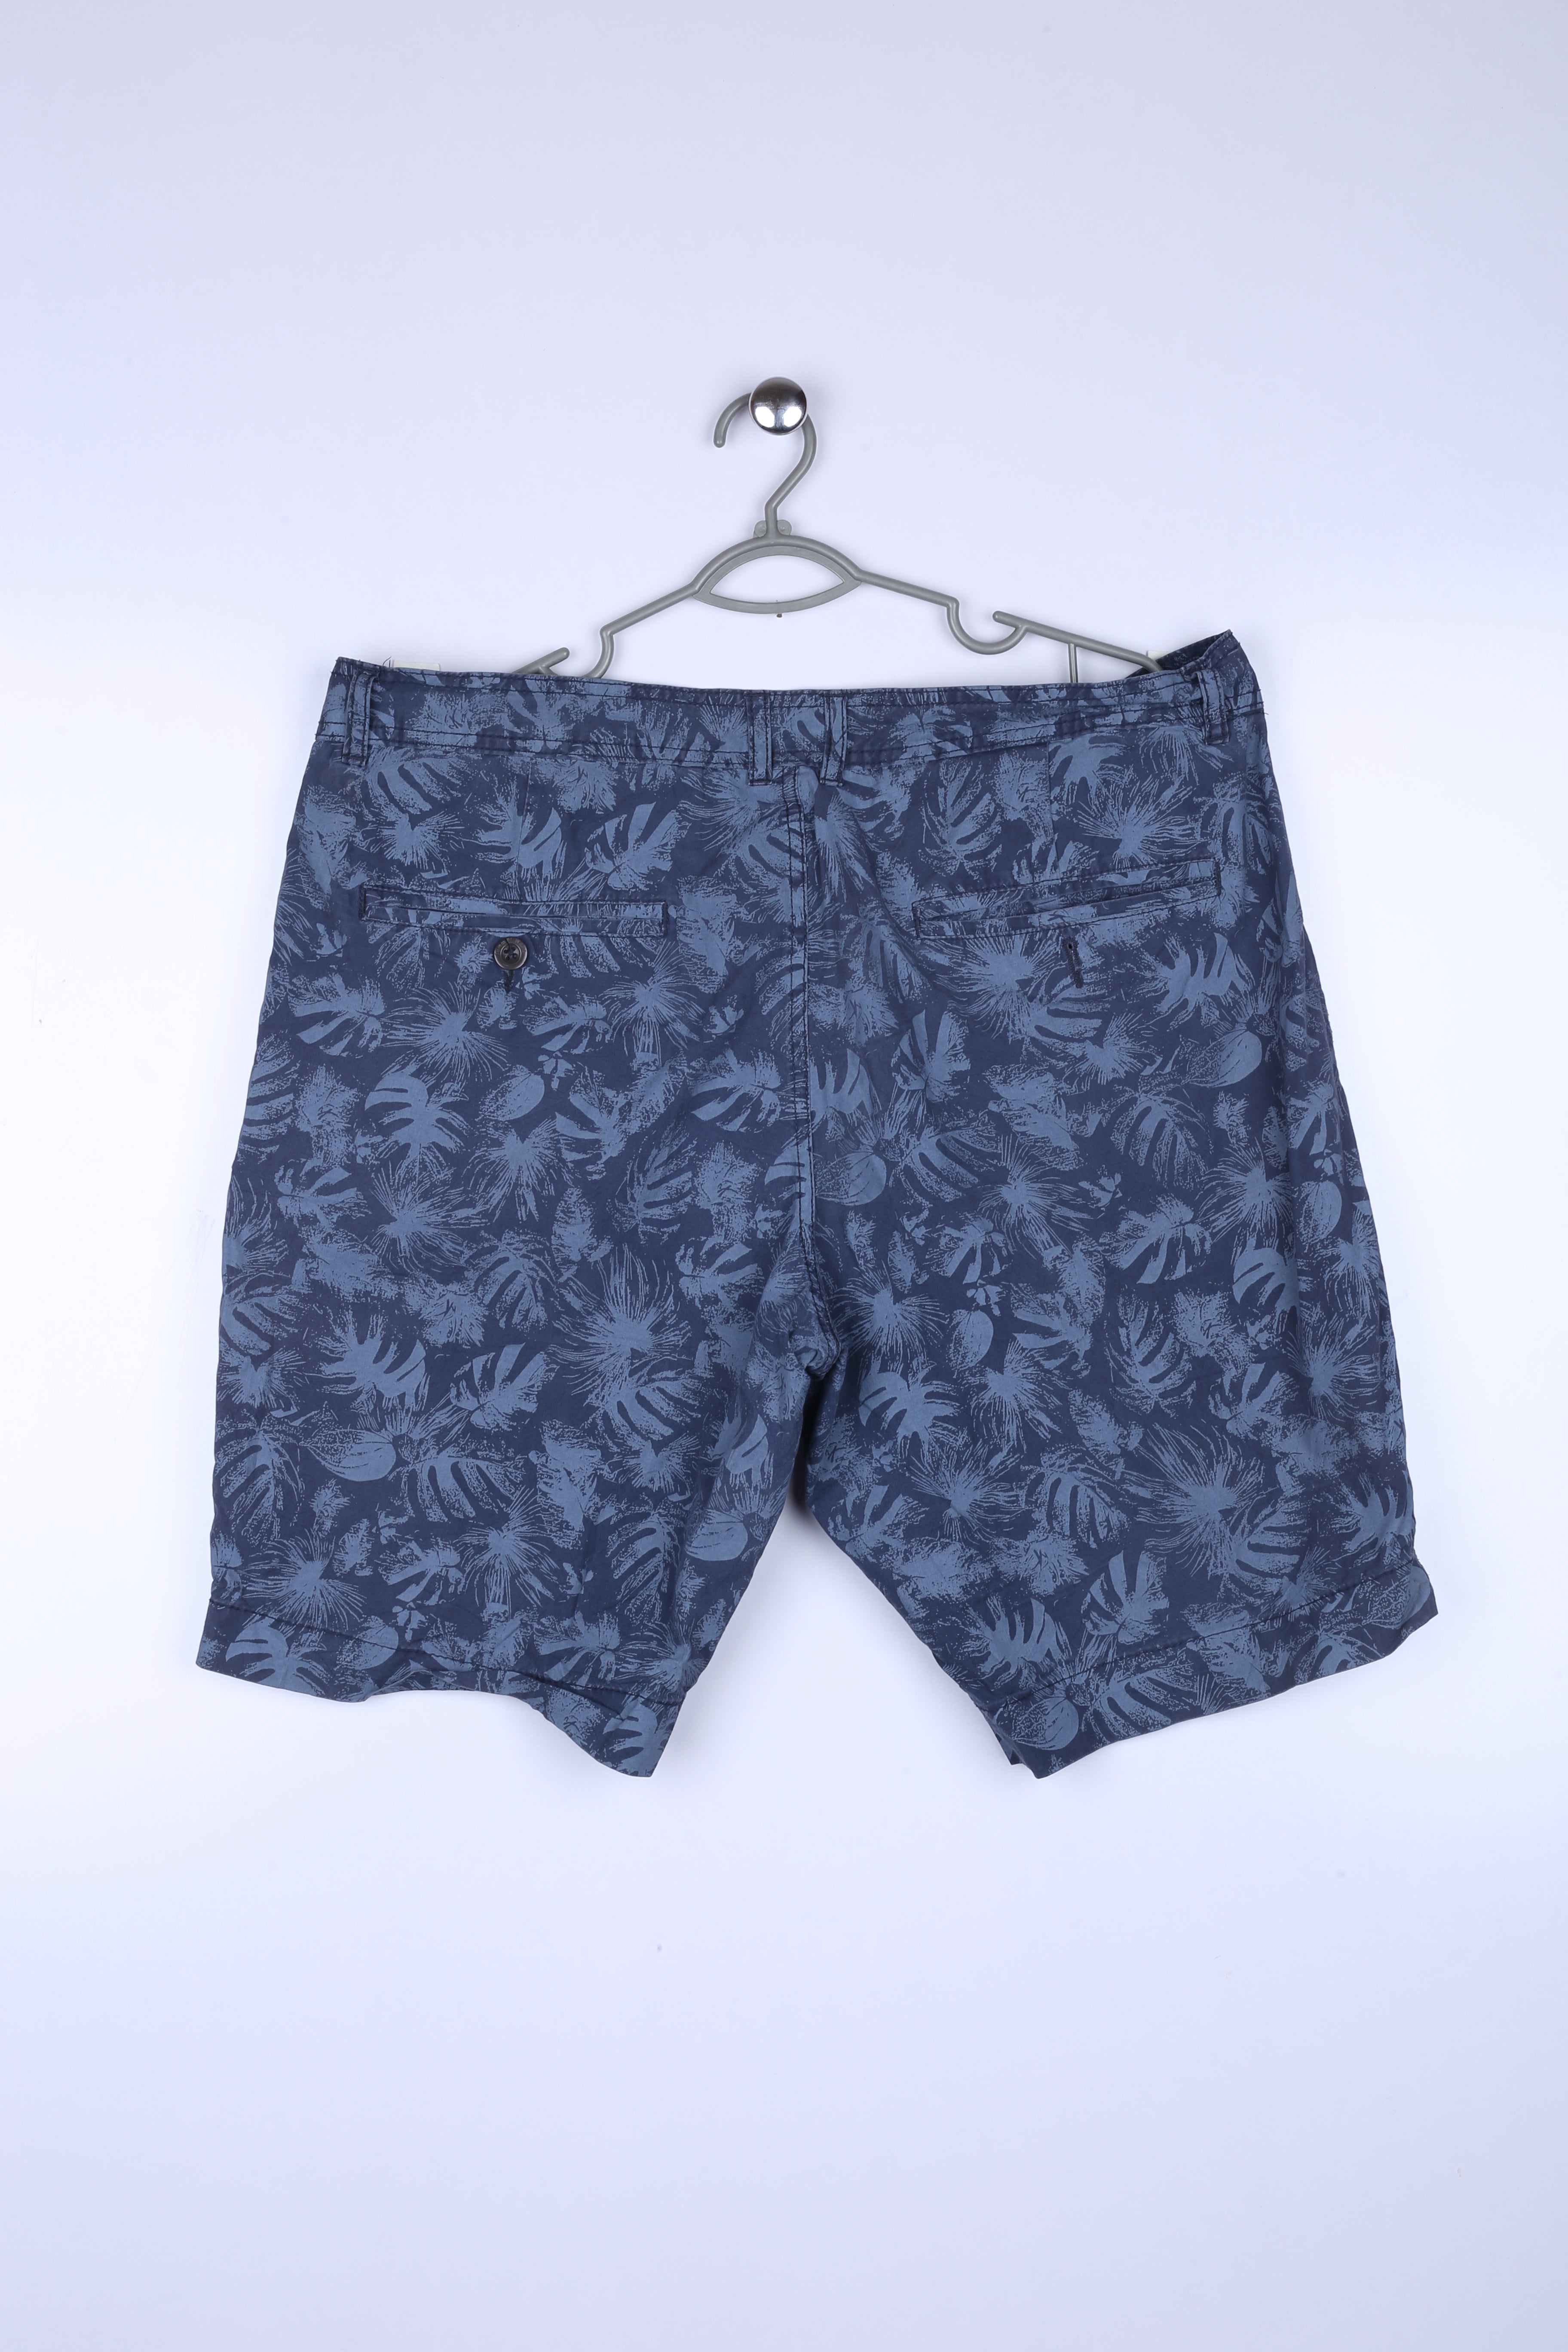 Vintage Hawaiin Shorts Navy X Larg